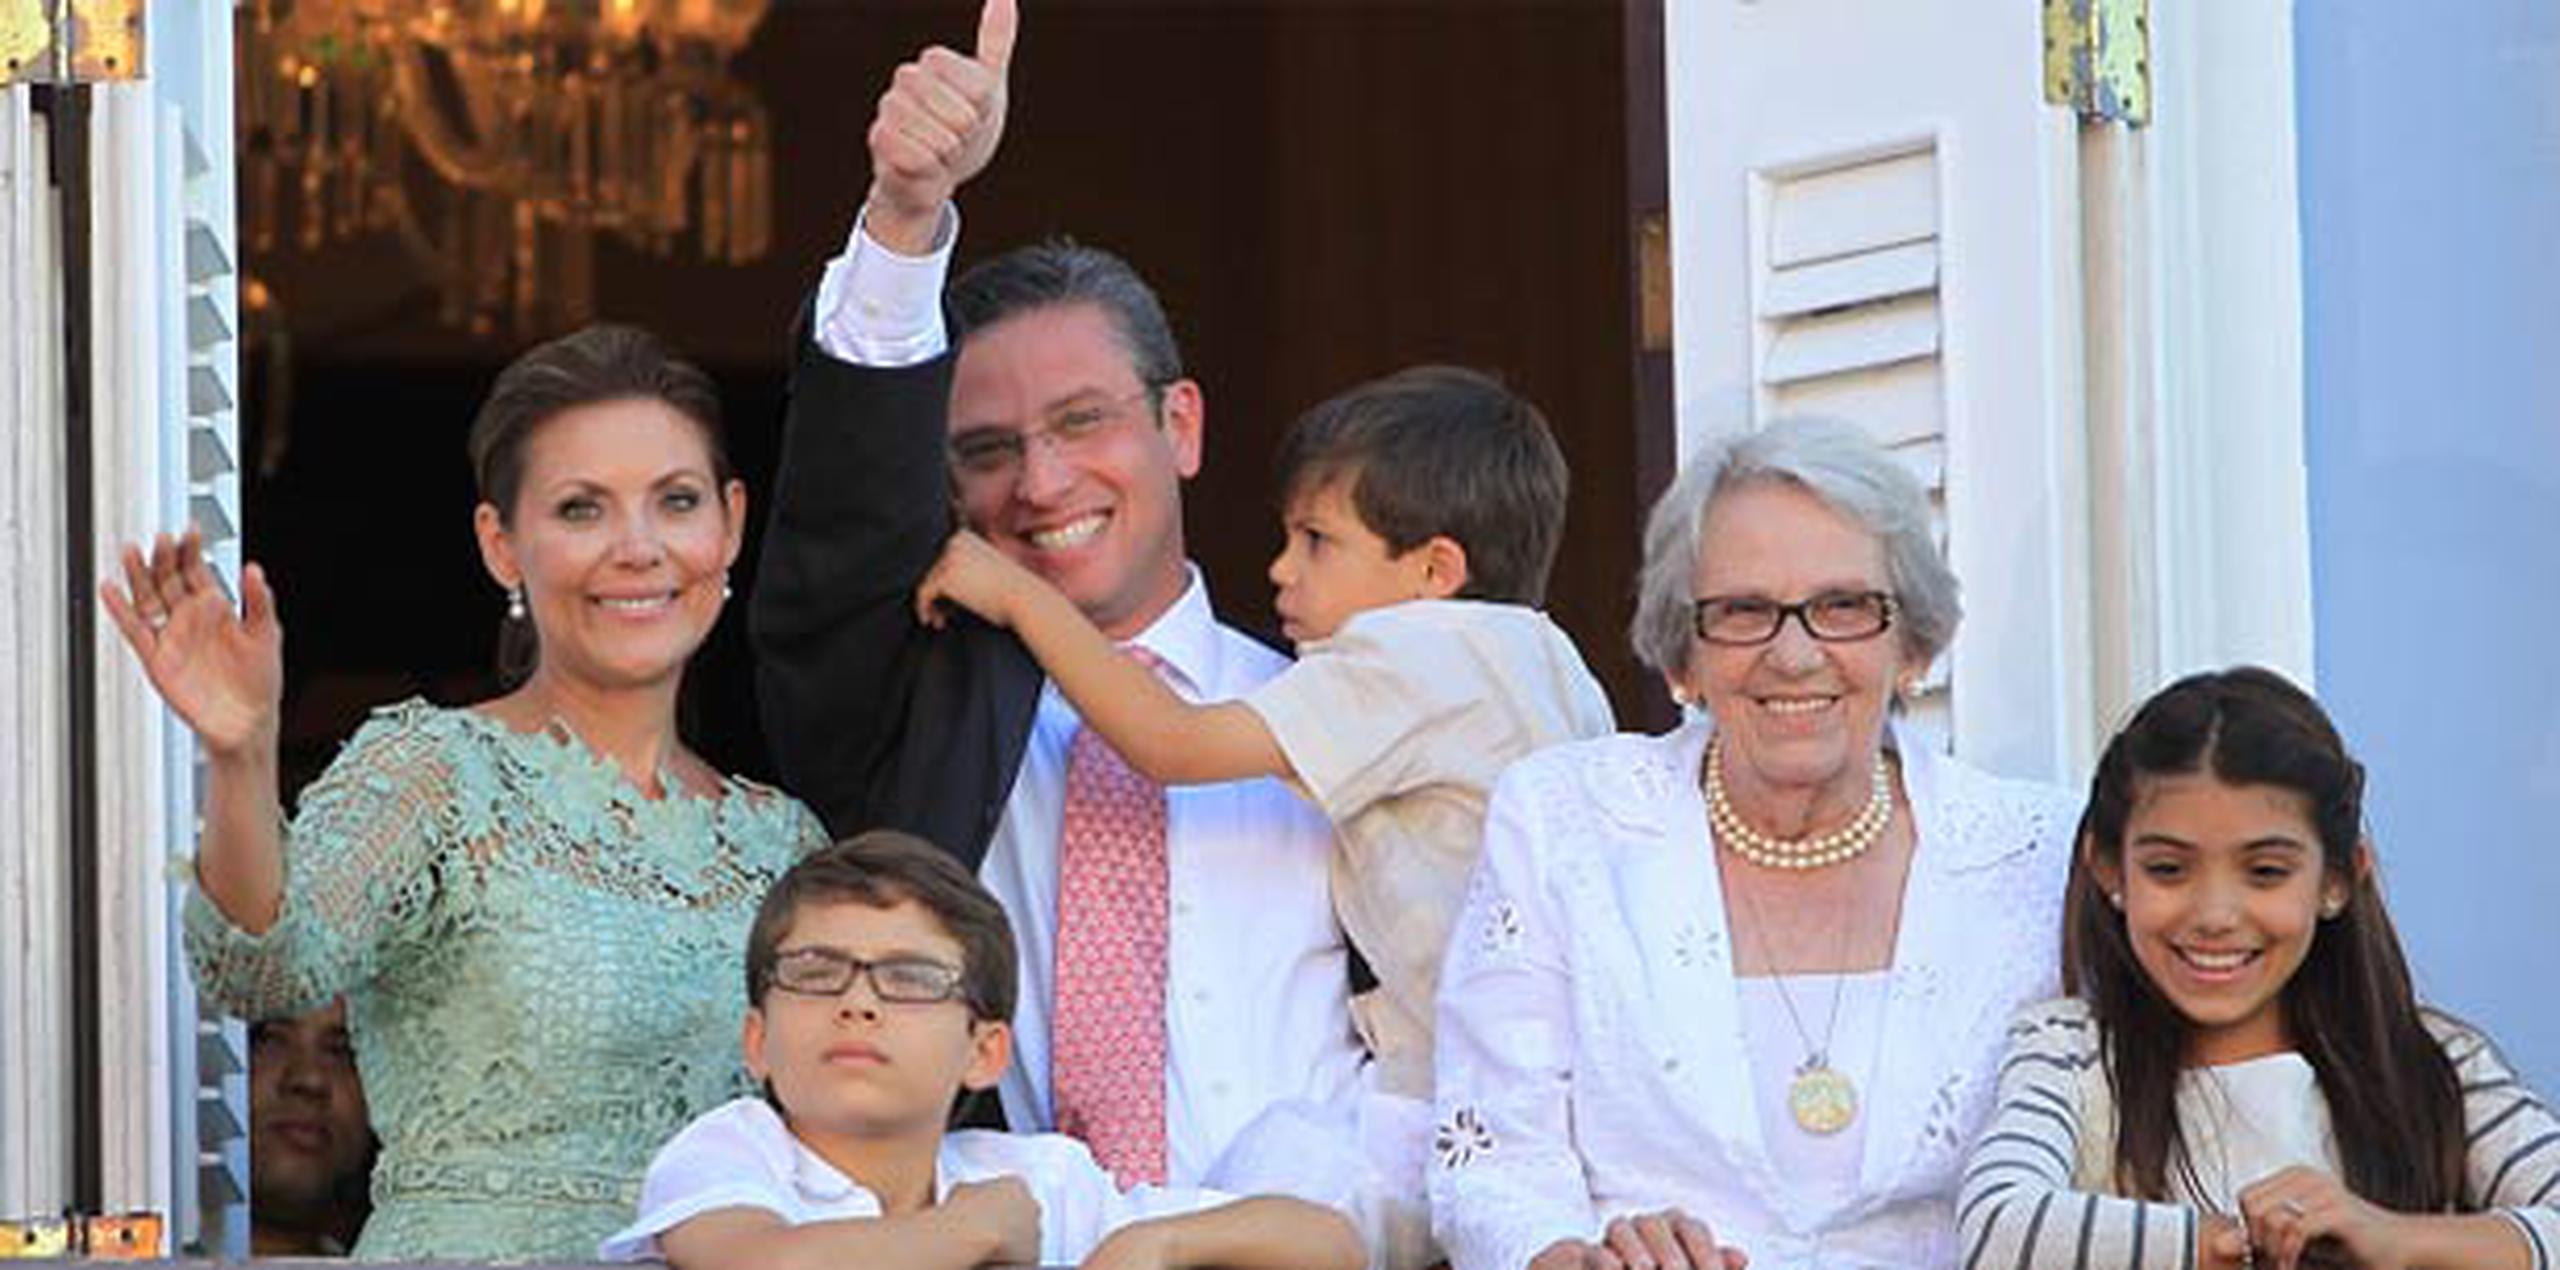 El gobernador celebró el Día de las Madres junto a su familia. (Archivo)